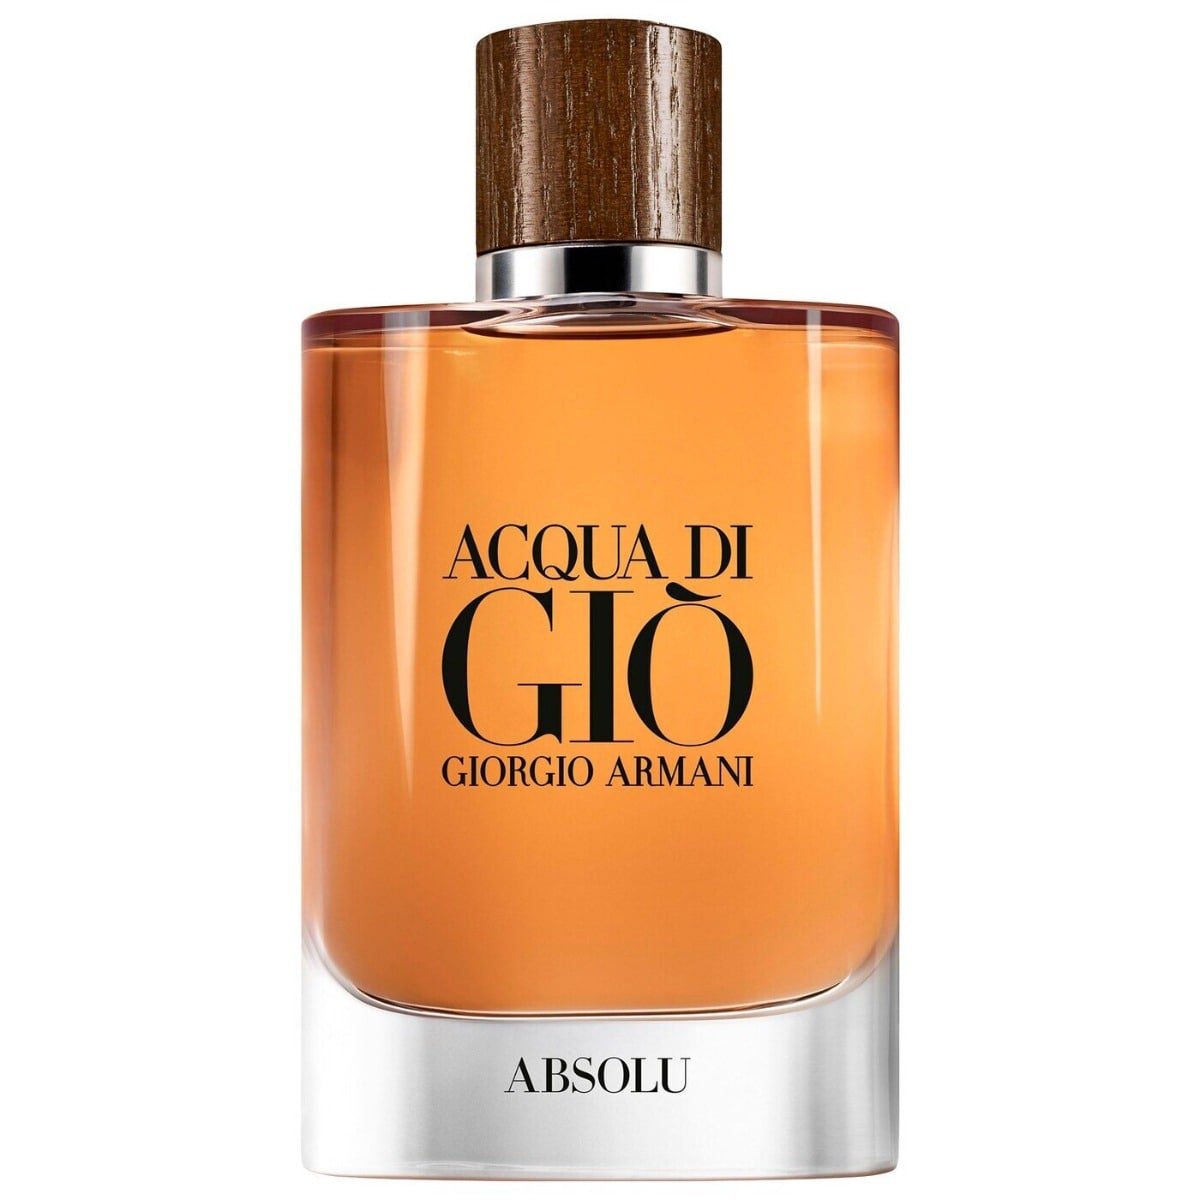 Giorgio Armani Acqua Di Gio Homme Absolu For Men Edp 125ml-Perfume - AllurebeautypkGiorgio Armani Acqua Di Gio Homme Absolu For Men Edp 125ml-Perfume